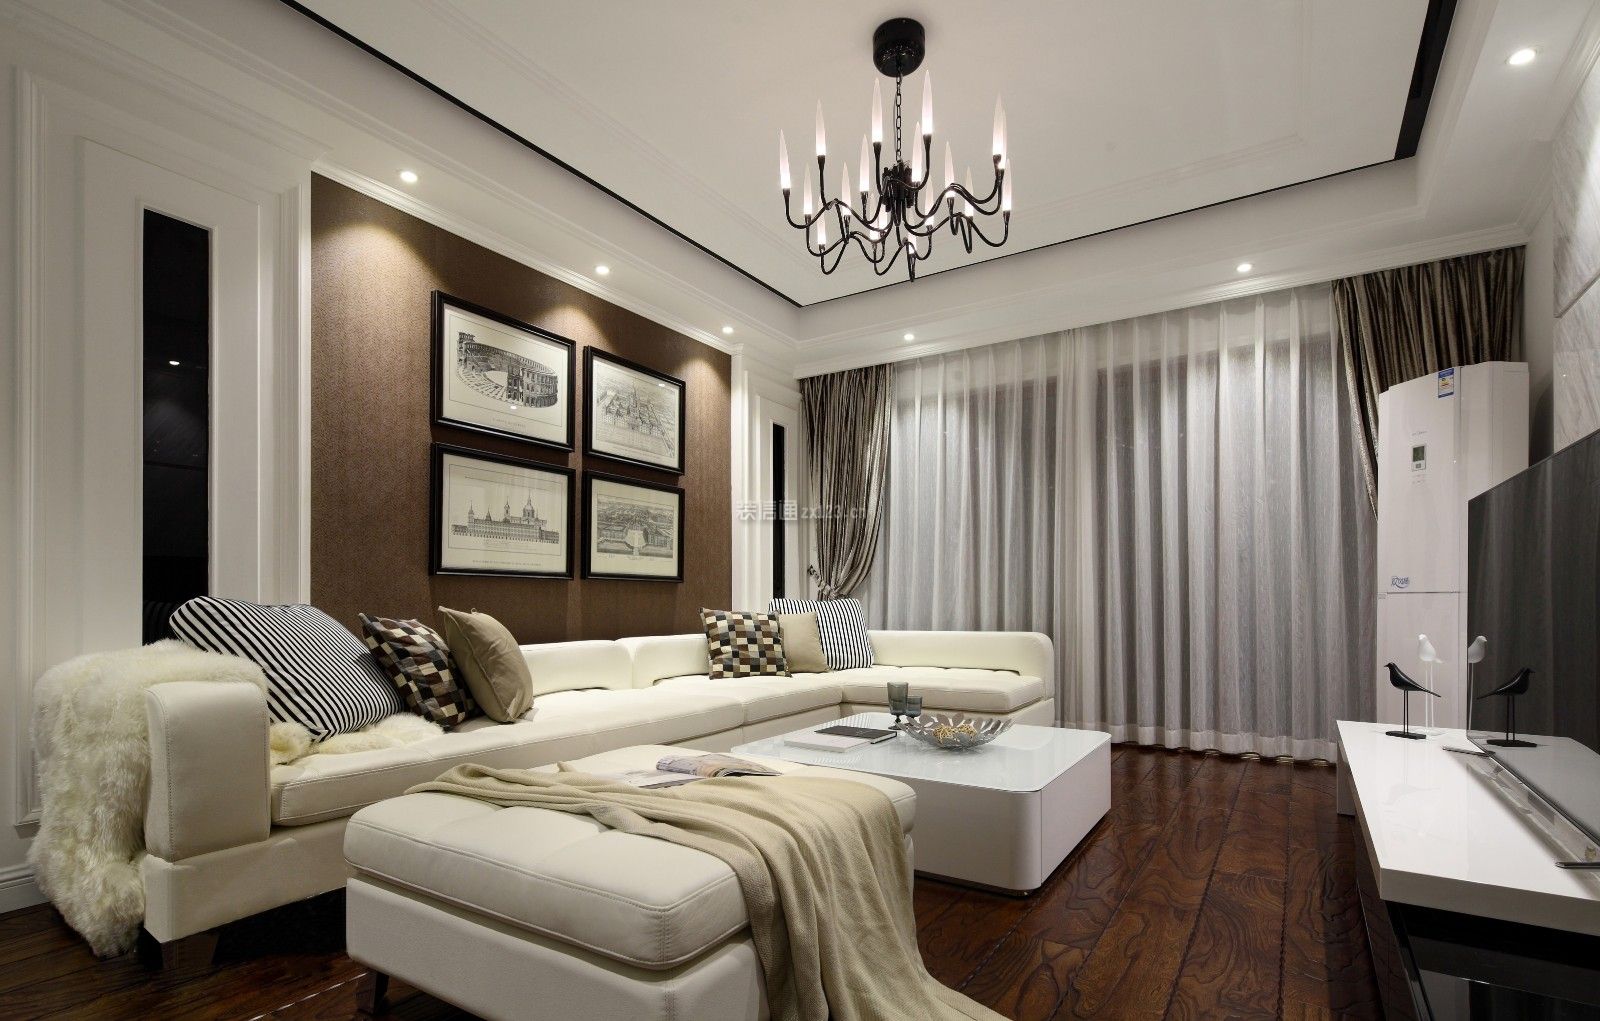 美式客厅装修布局效果图 美式客厅沙发效果图 美式客厅装修图片